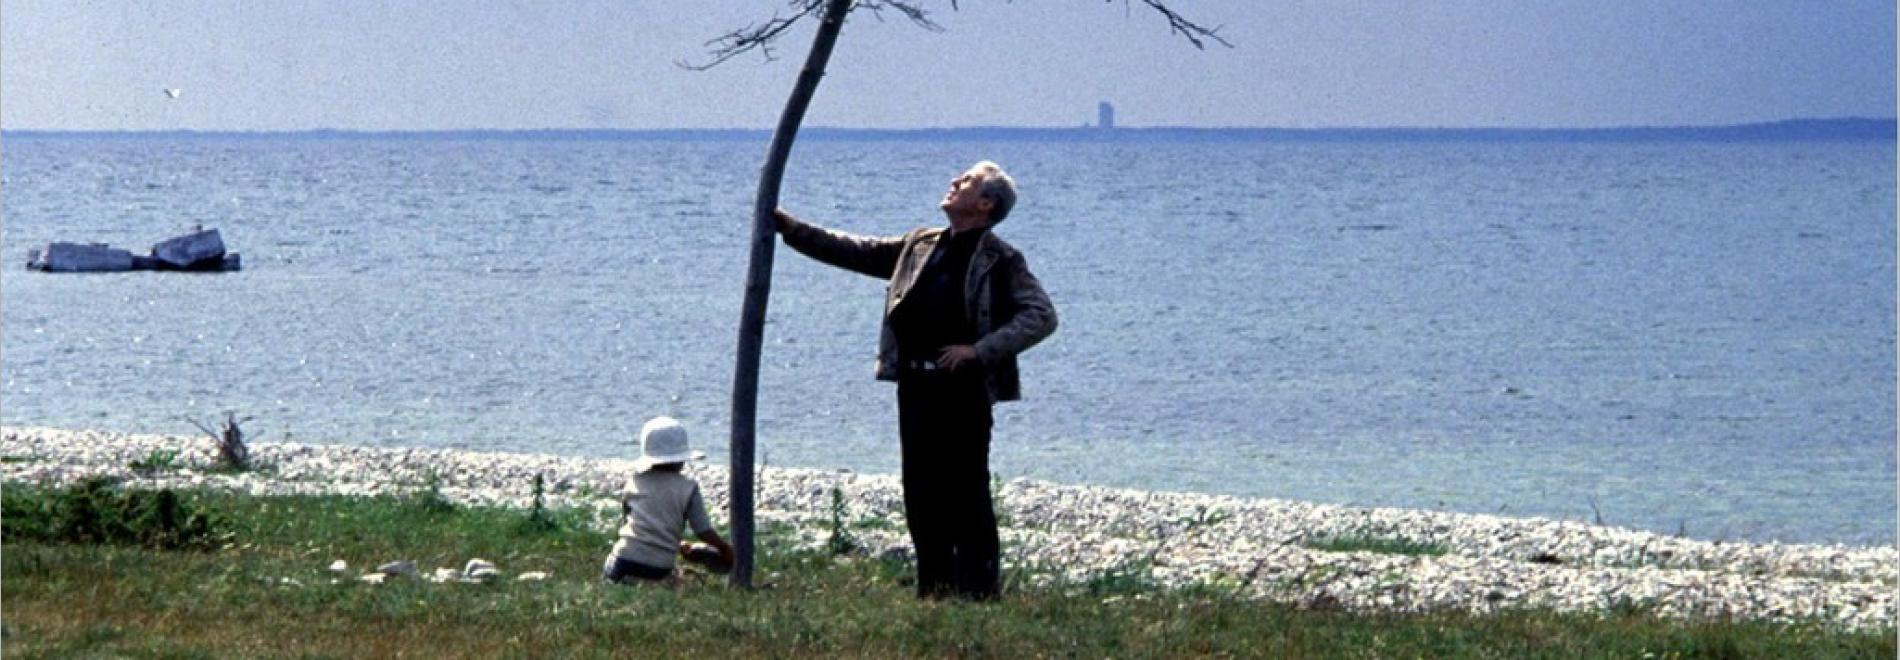 Offret (Andrei Tarkovski, 1985)